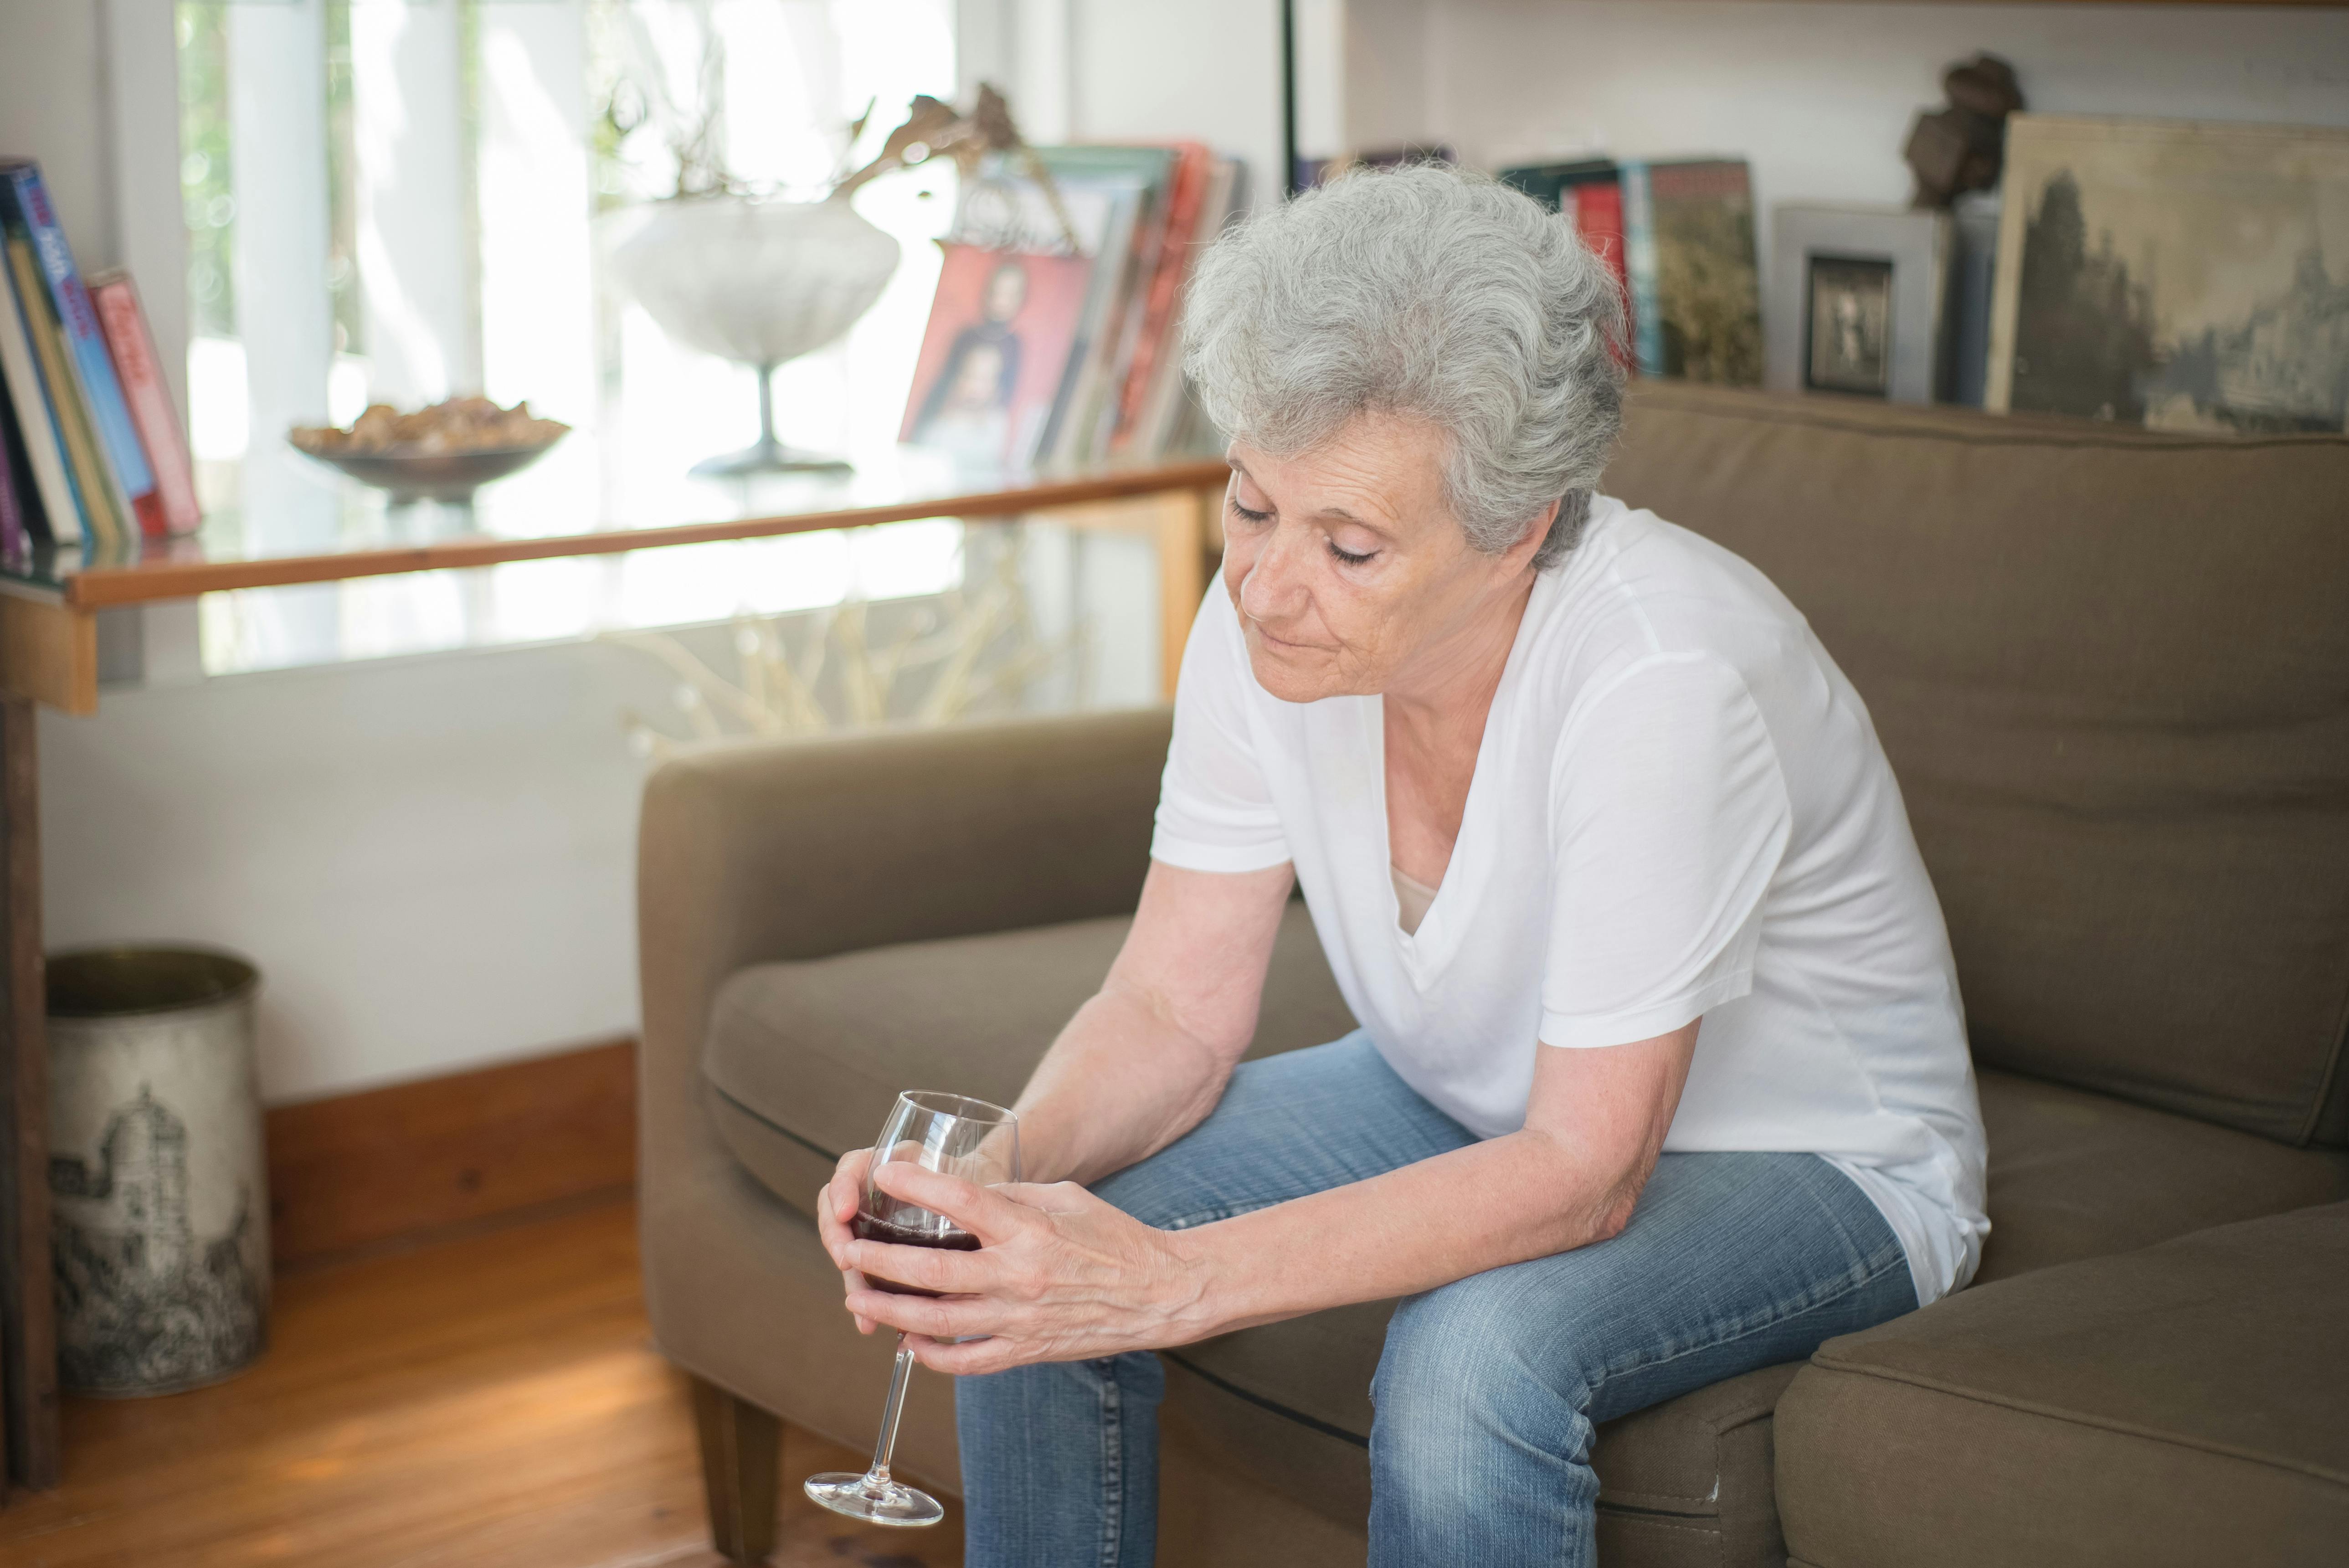 Une femme âgée contrariée tenant un verre de vin alors qu'elle est assise sur un canapé | Source : Pexels